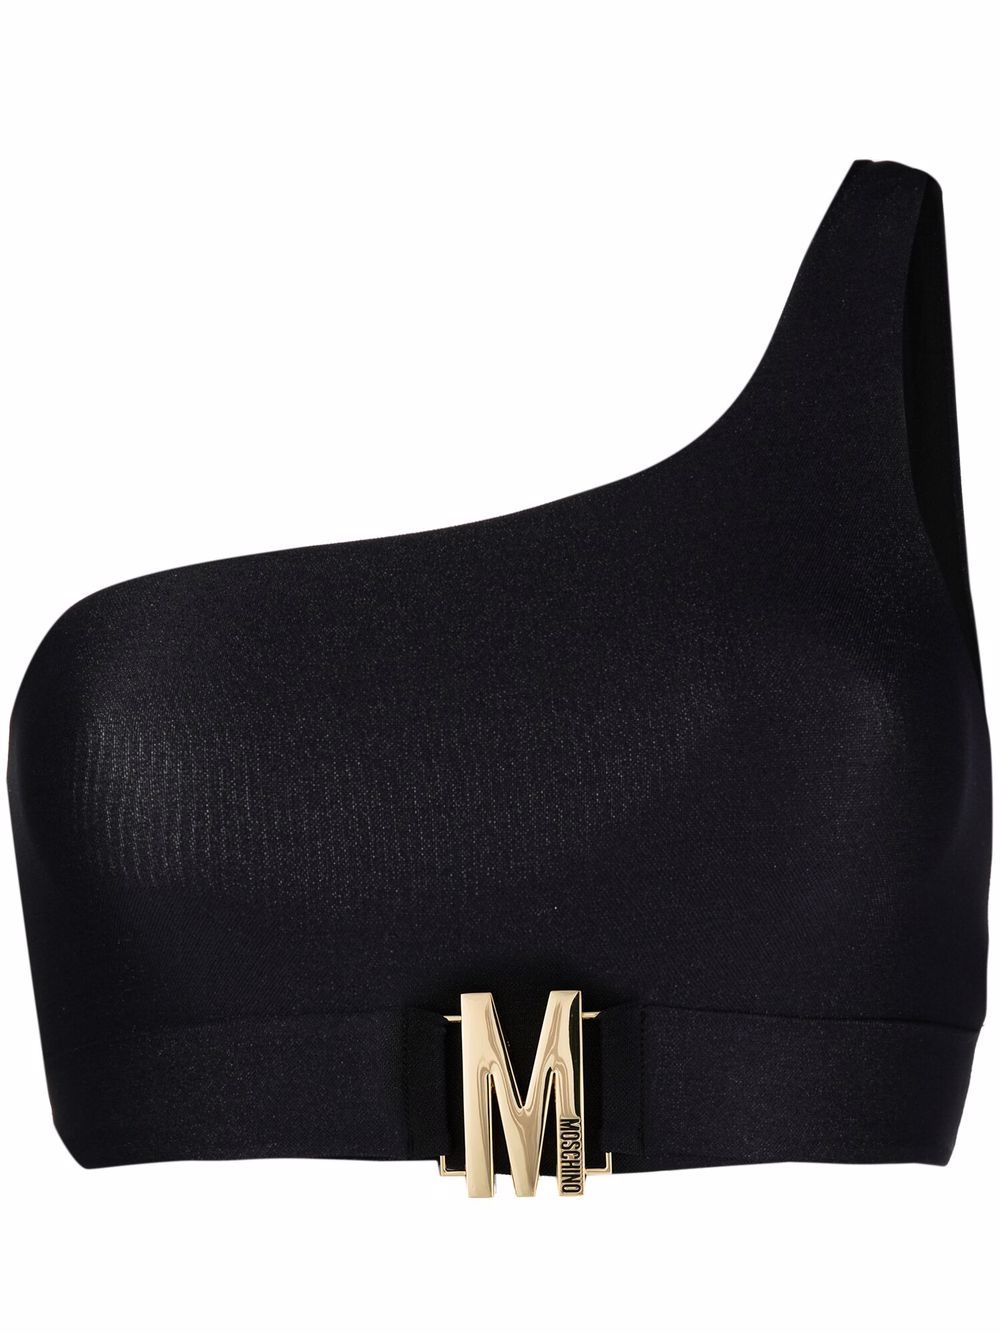 фото Moschino лиф бикини на одно плечо с логотипом